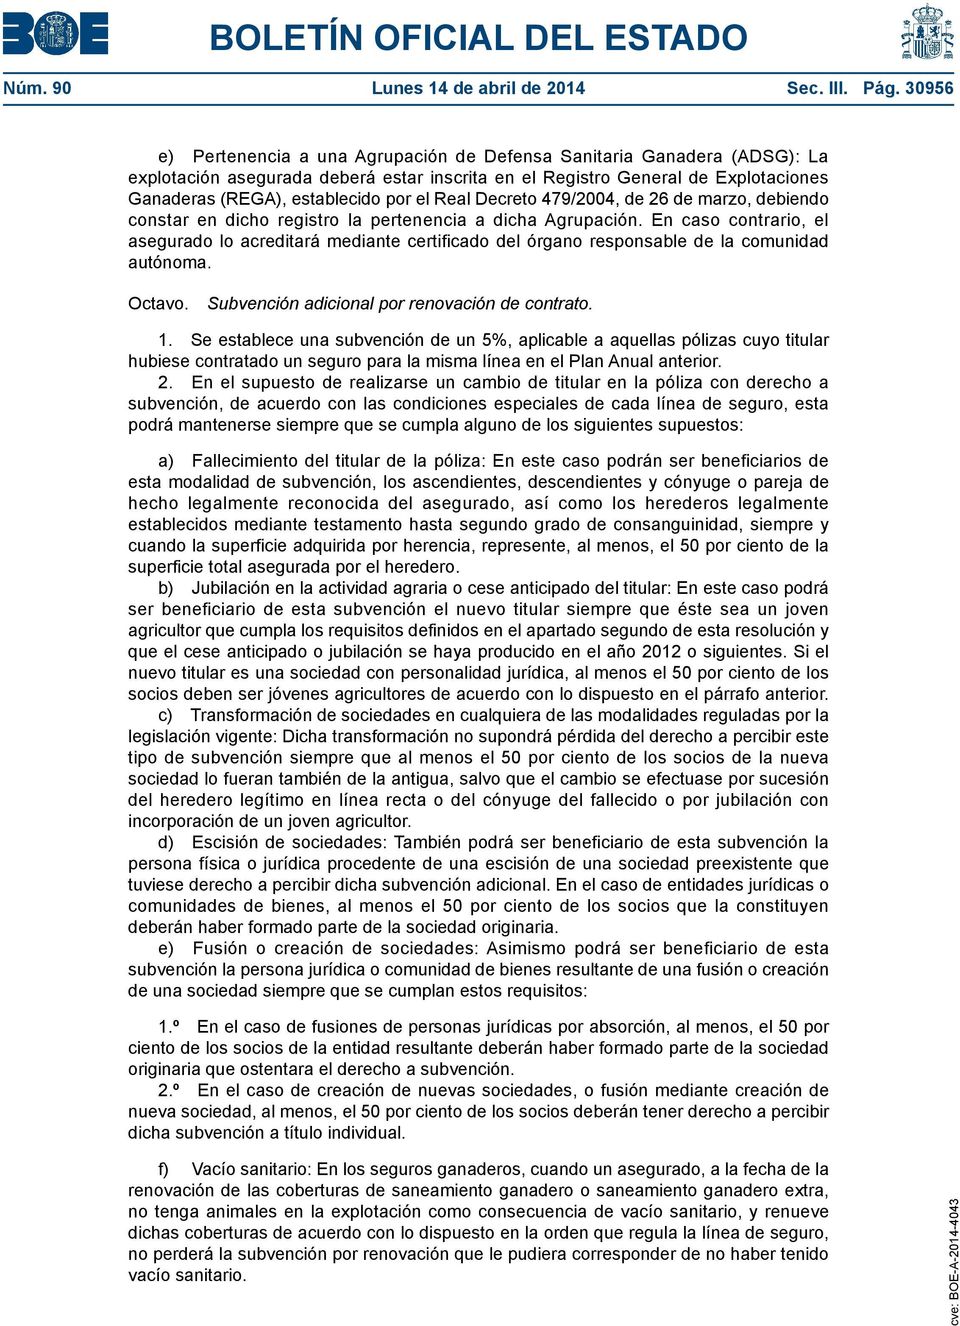 Real Decreto 479/2004, de 26 de marzo, debiendo constar en dicho registro la pertenencia a dicha Agrupación.